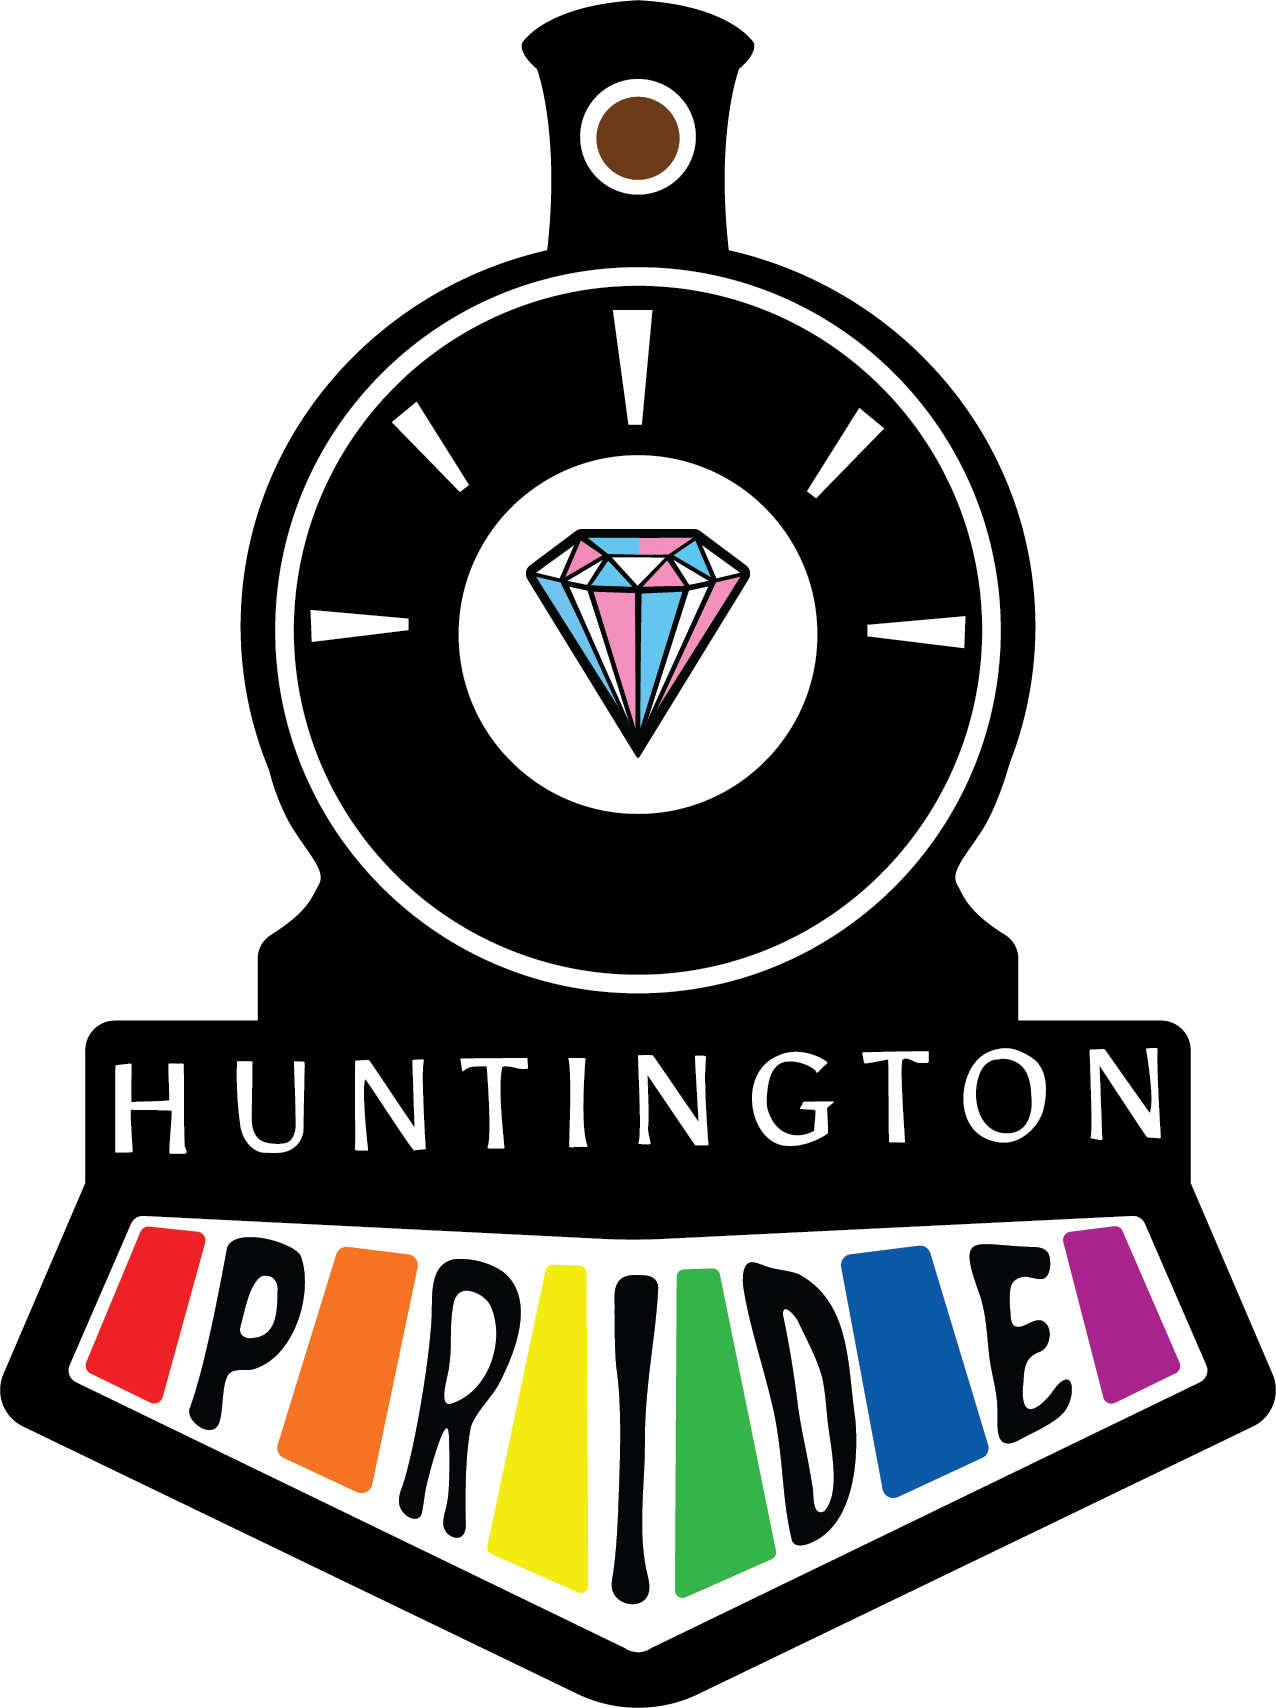 Huntington Pride